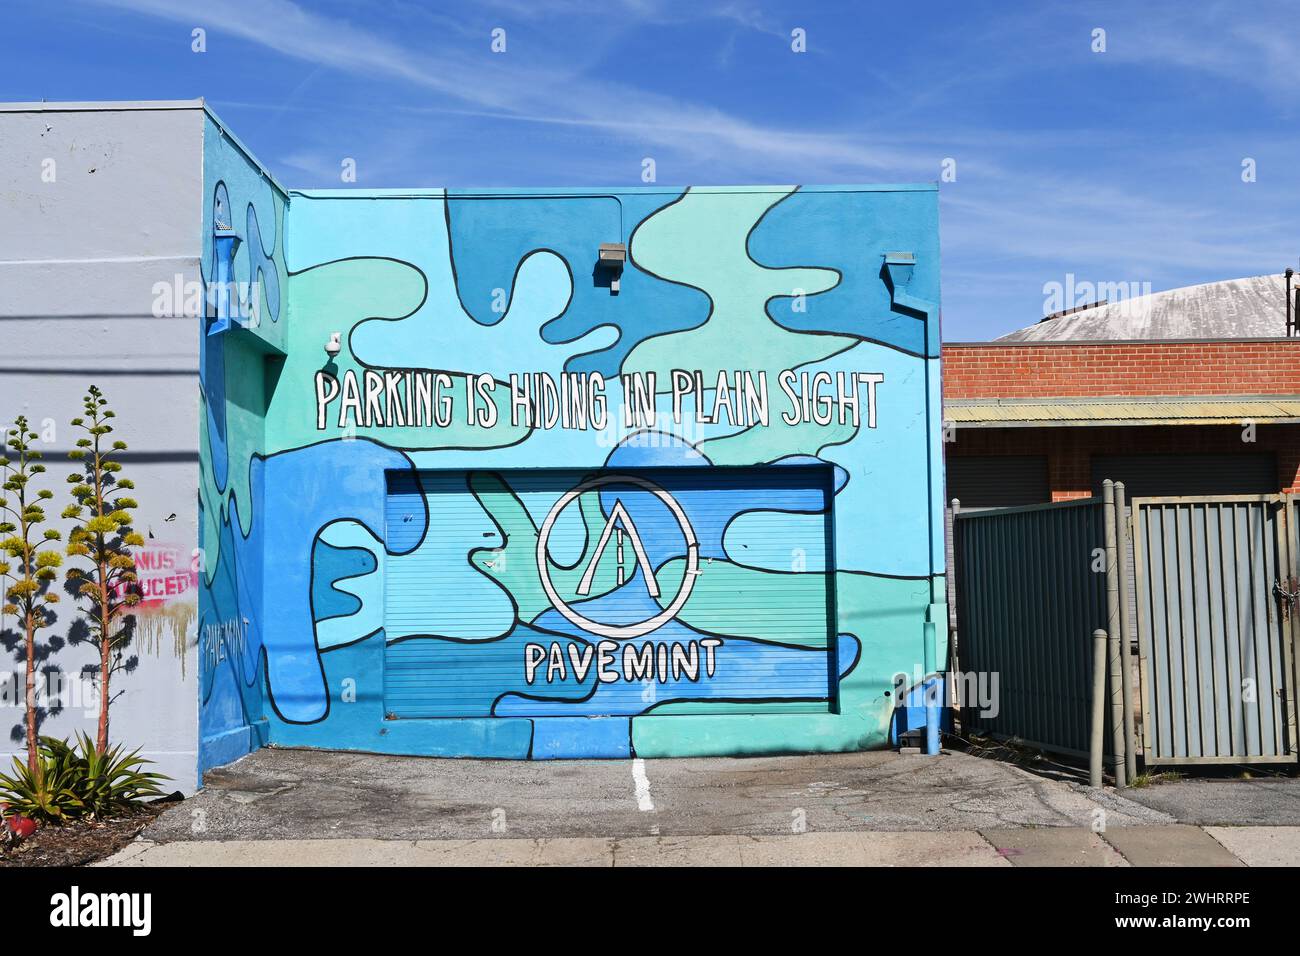 CULVER CITY, KALIFORNIEN - 28. JAN 2024: Wandbild für Pavemint, eine App in Los Angeles, die es Menschen ermöglicht, ihre Parkplätze zu teilen. Stockfoto